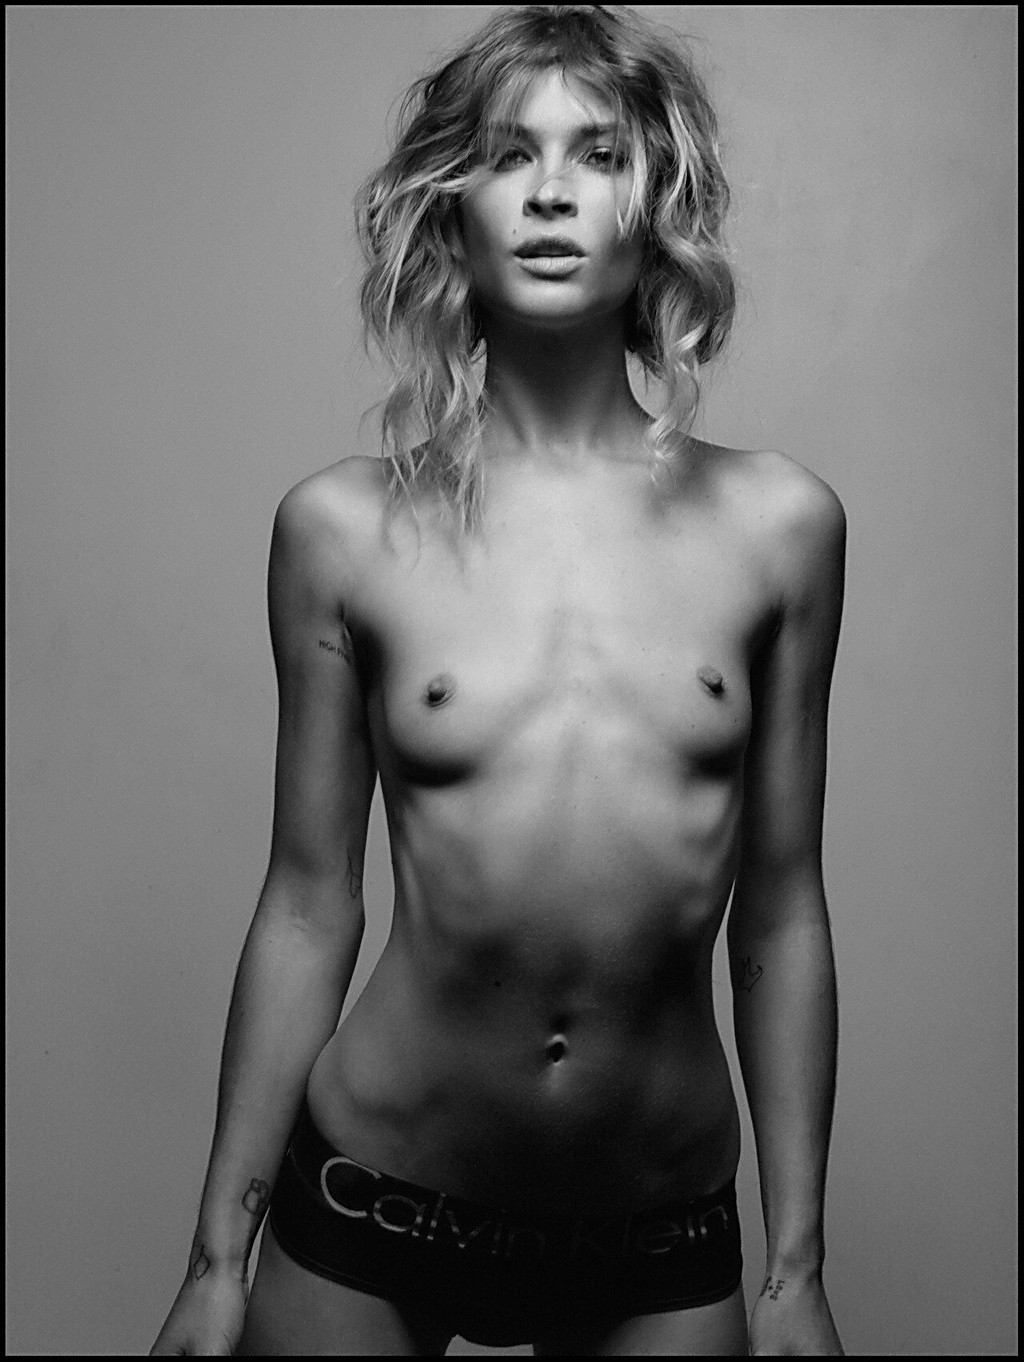 Erin wasson zeigt ihren völlig nackten Körper in der Sommer 2012 Ausgabe des zink Magazins
 #75258814